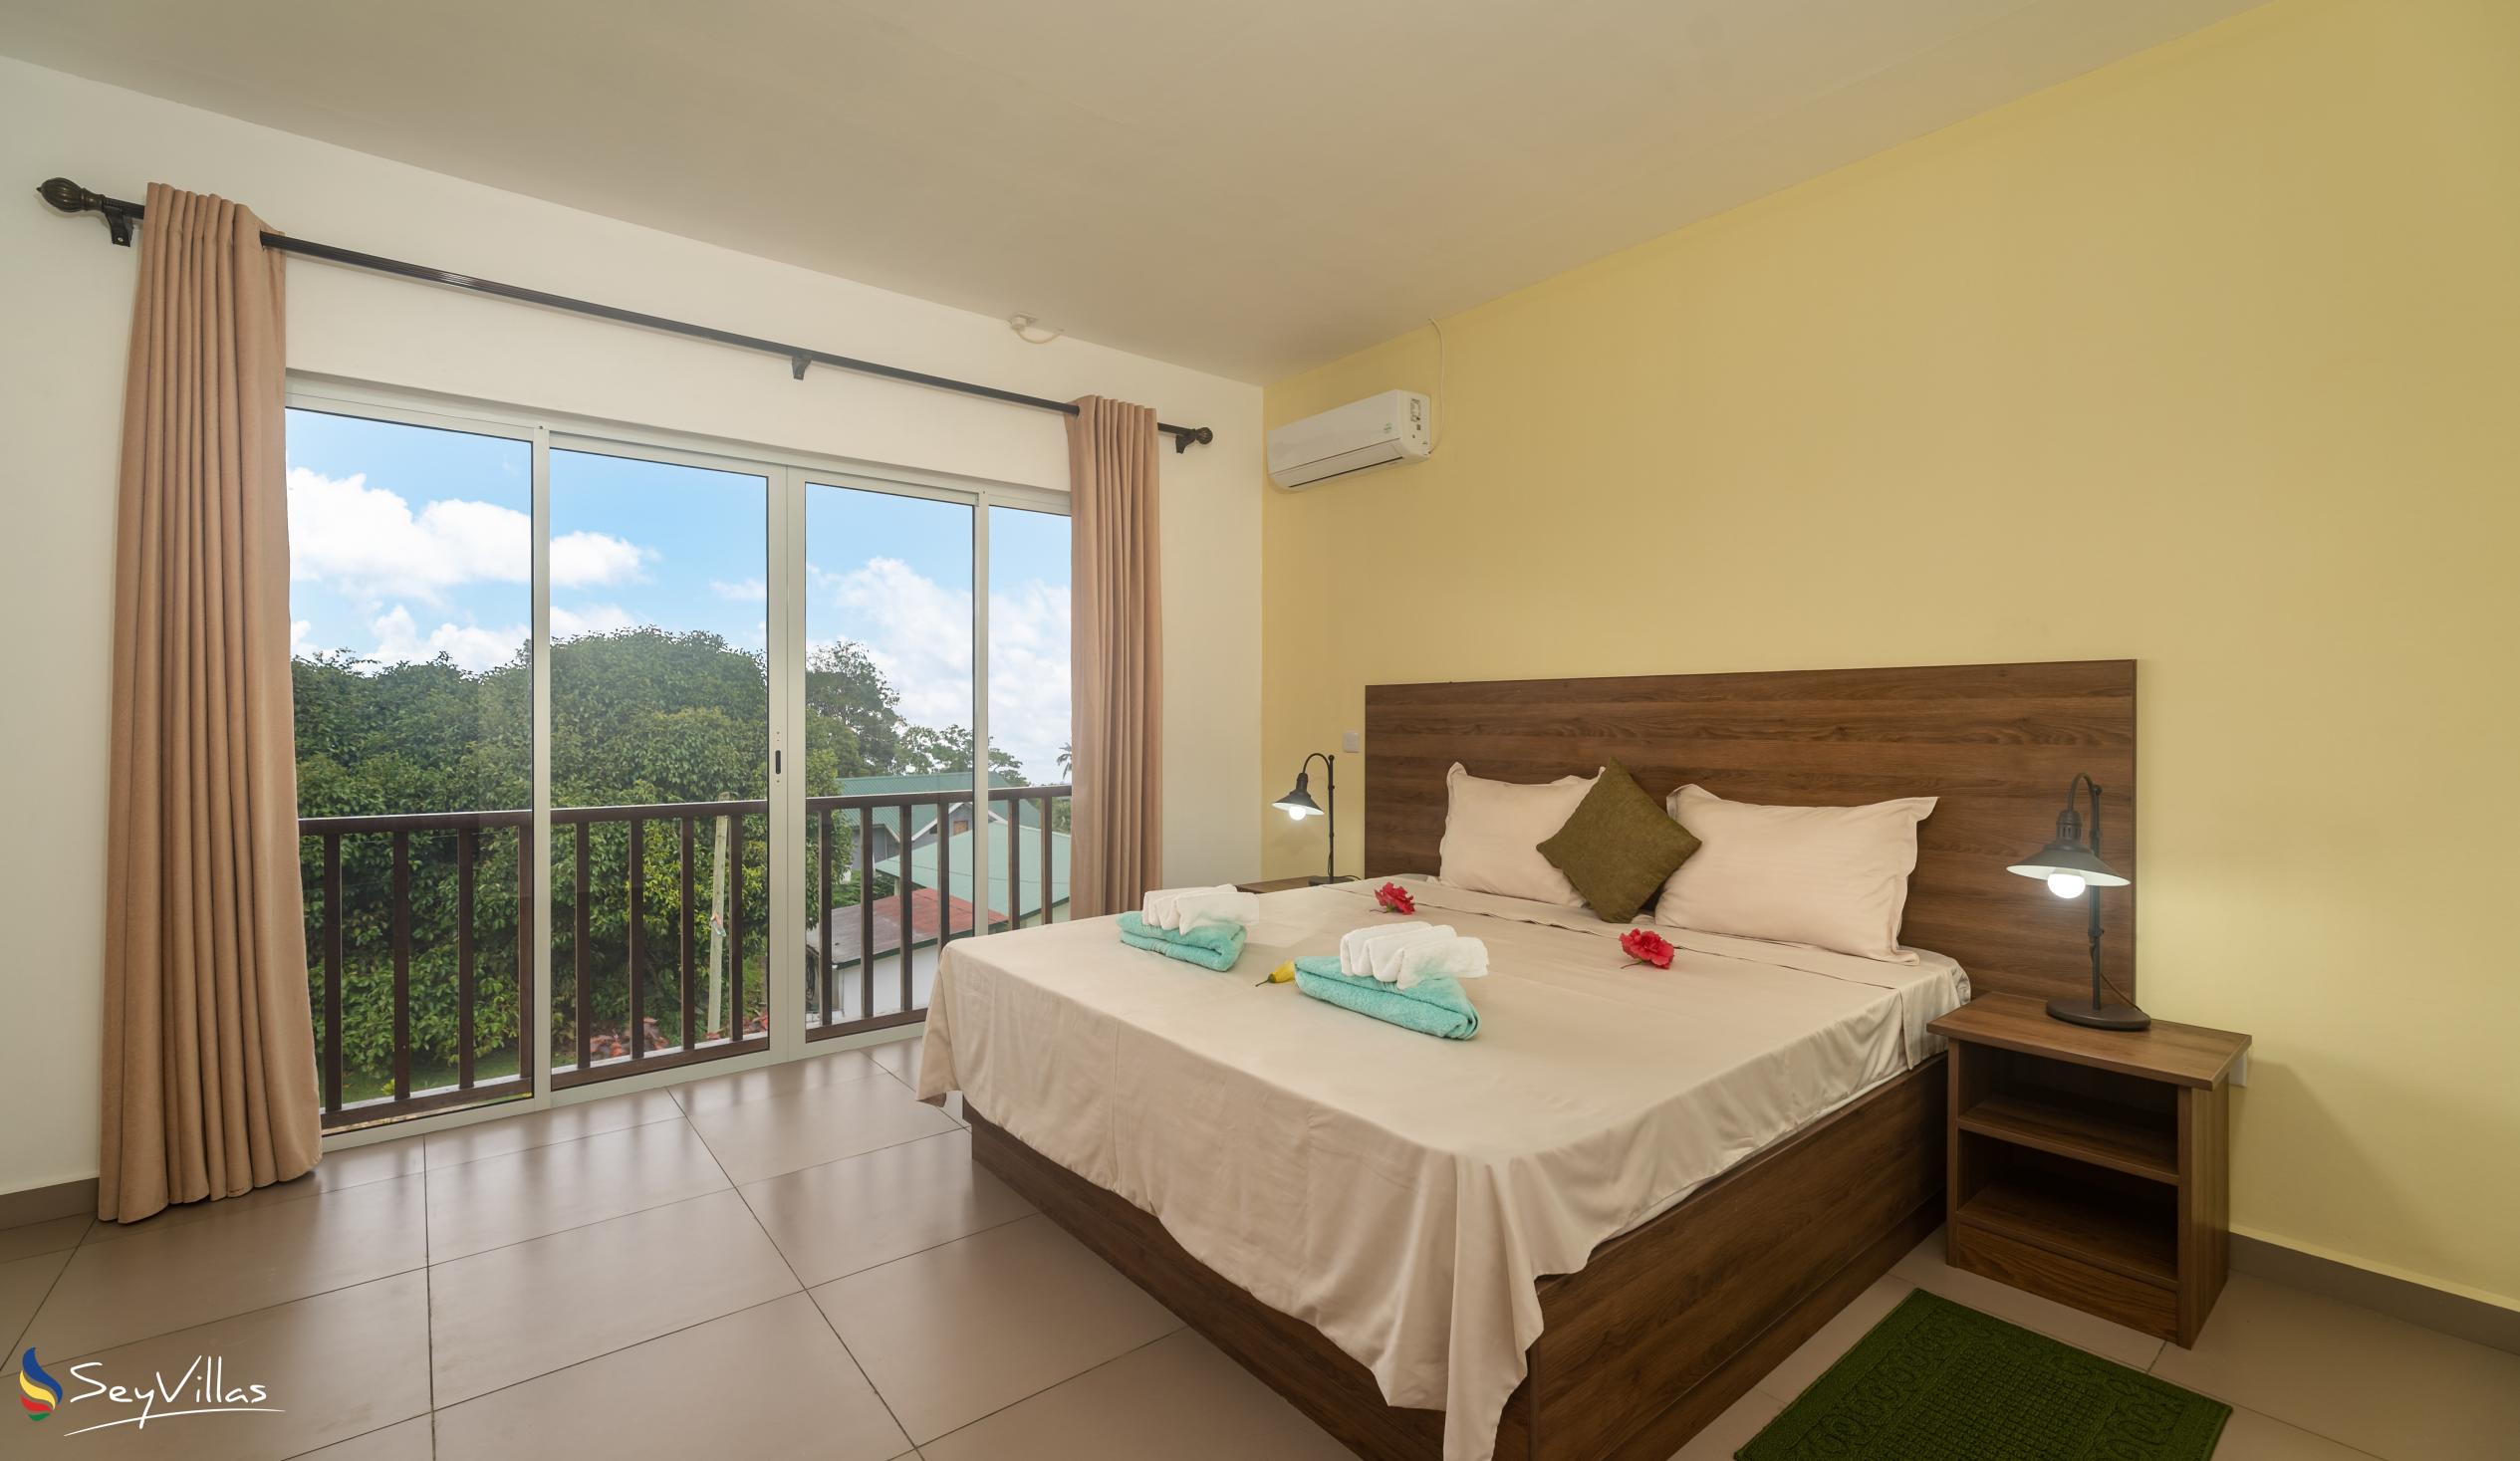 Foto 42: Maison Dora - Villa 2 chambres - Mahé (Seychelles)